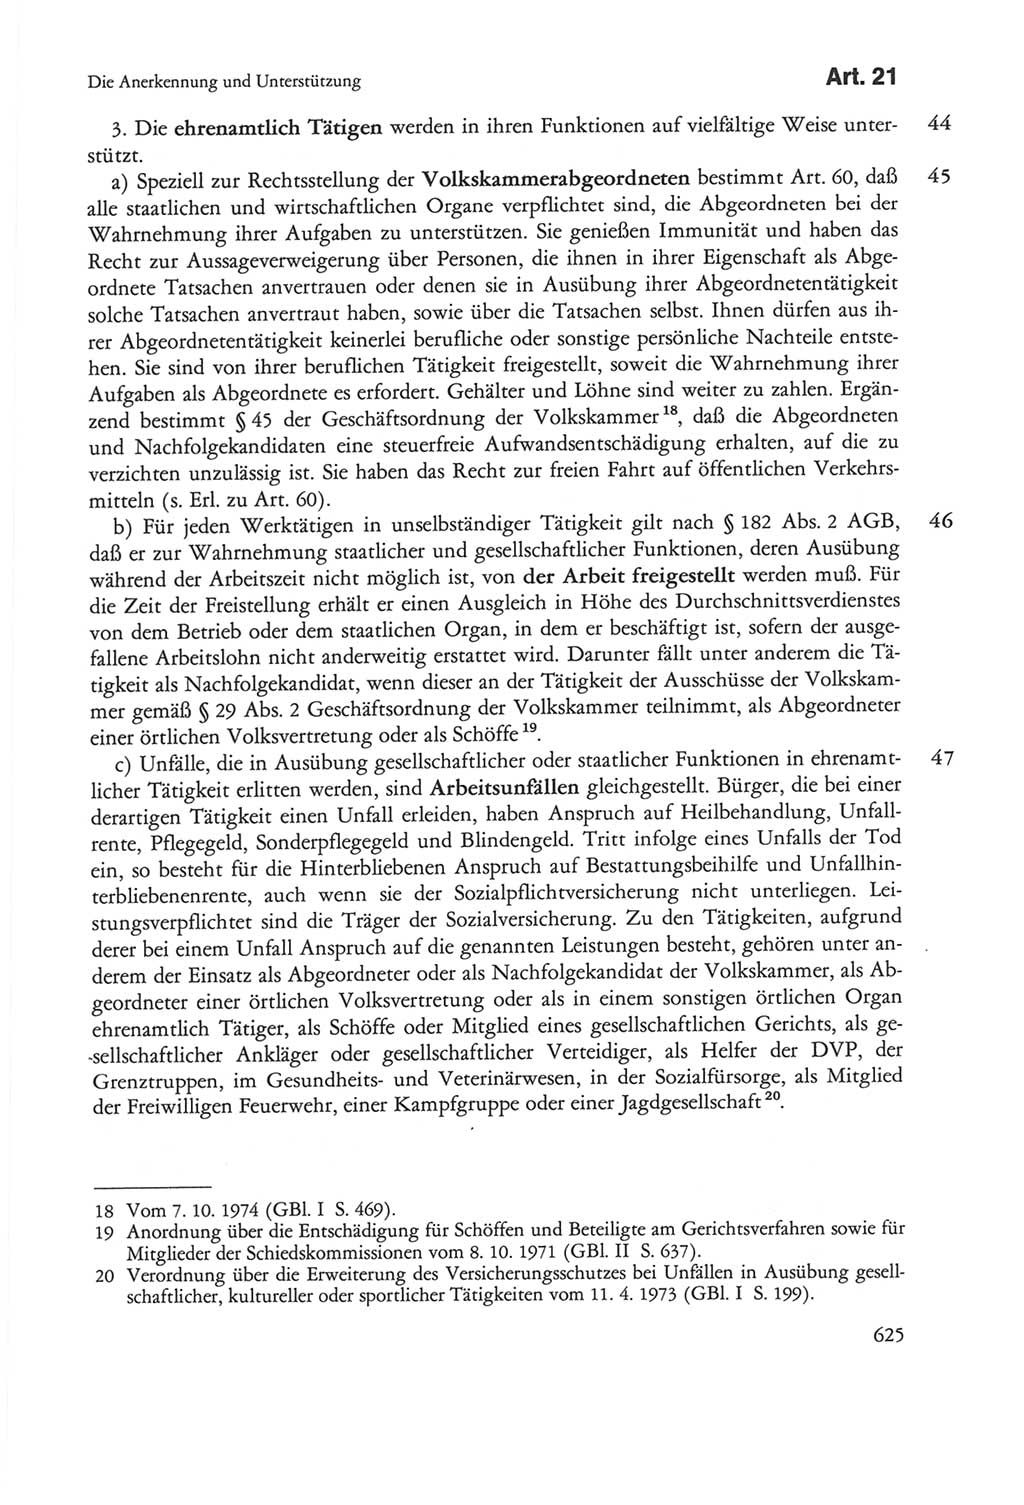 Die sozialistische Verfassung der Deutschen Demokratischen Republik (DDR), Kommentar mit einem Nachtrag 1997, Seite 625 (Soz. Verf. DDR Komm. Nachtr. 1997, S. 625)